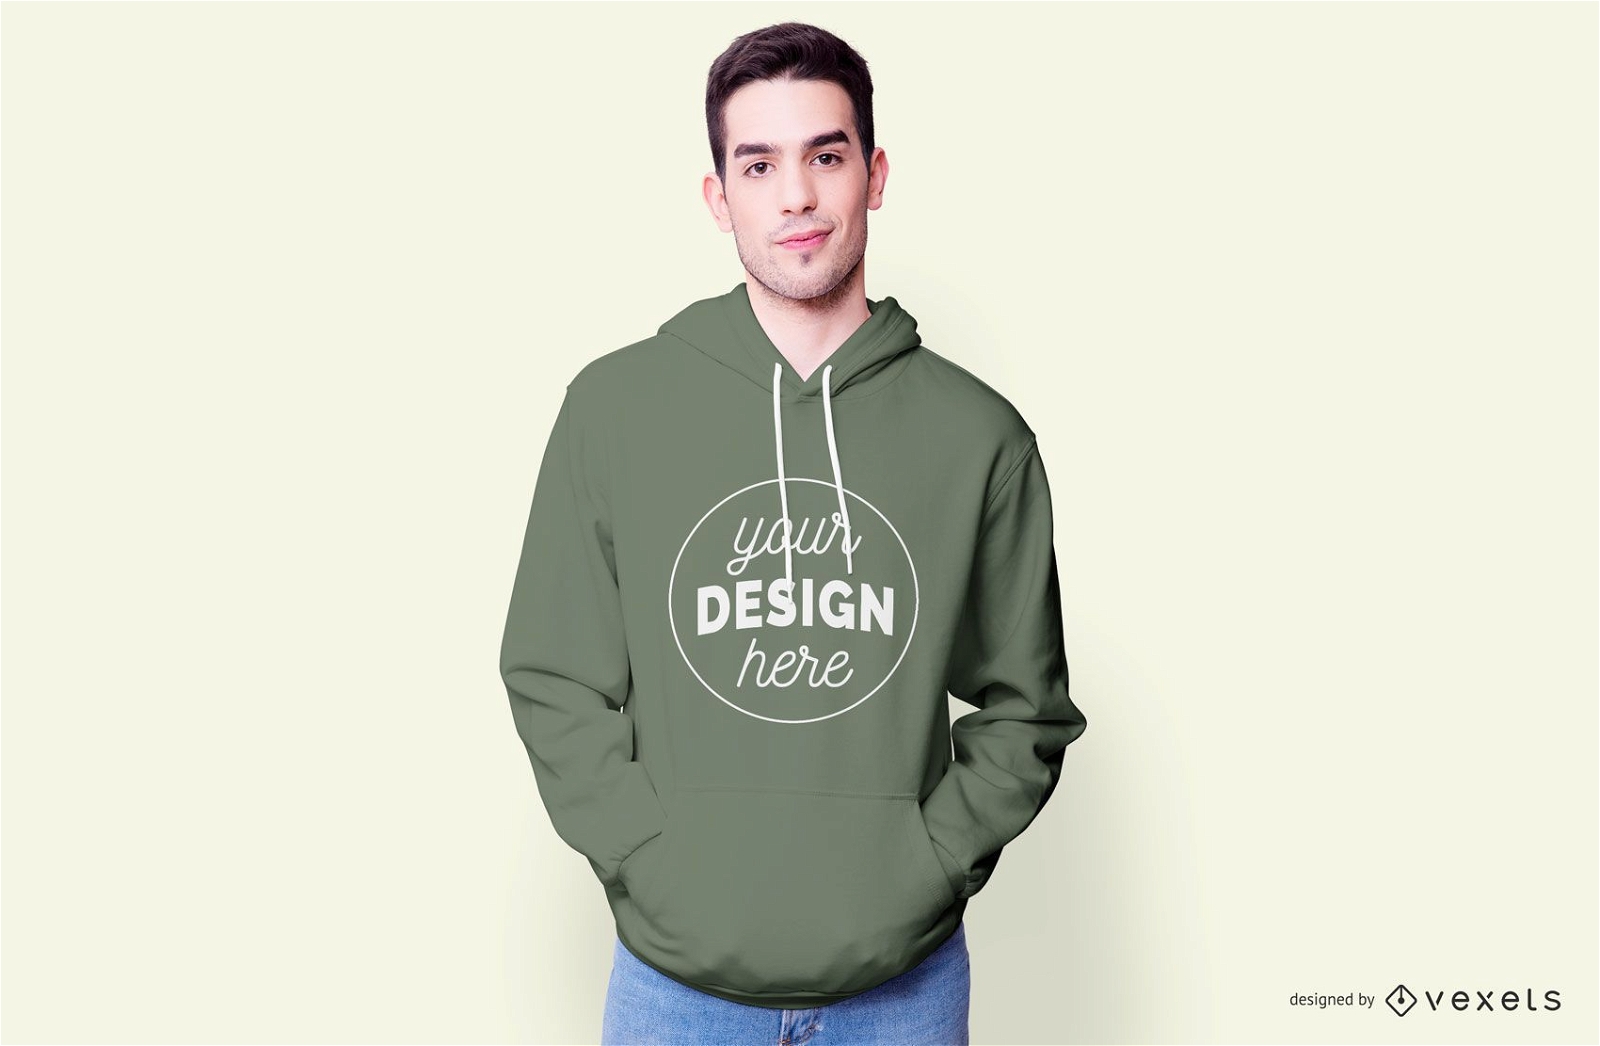 Guy wearing hoodie mockup - PSD Mockup download